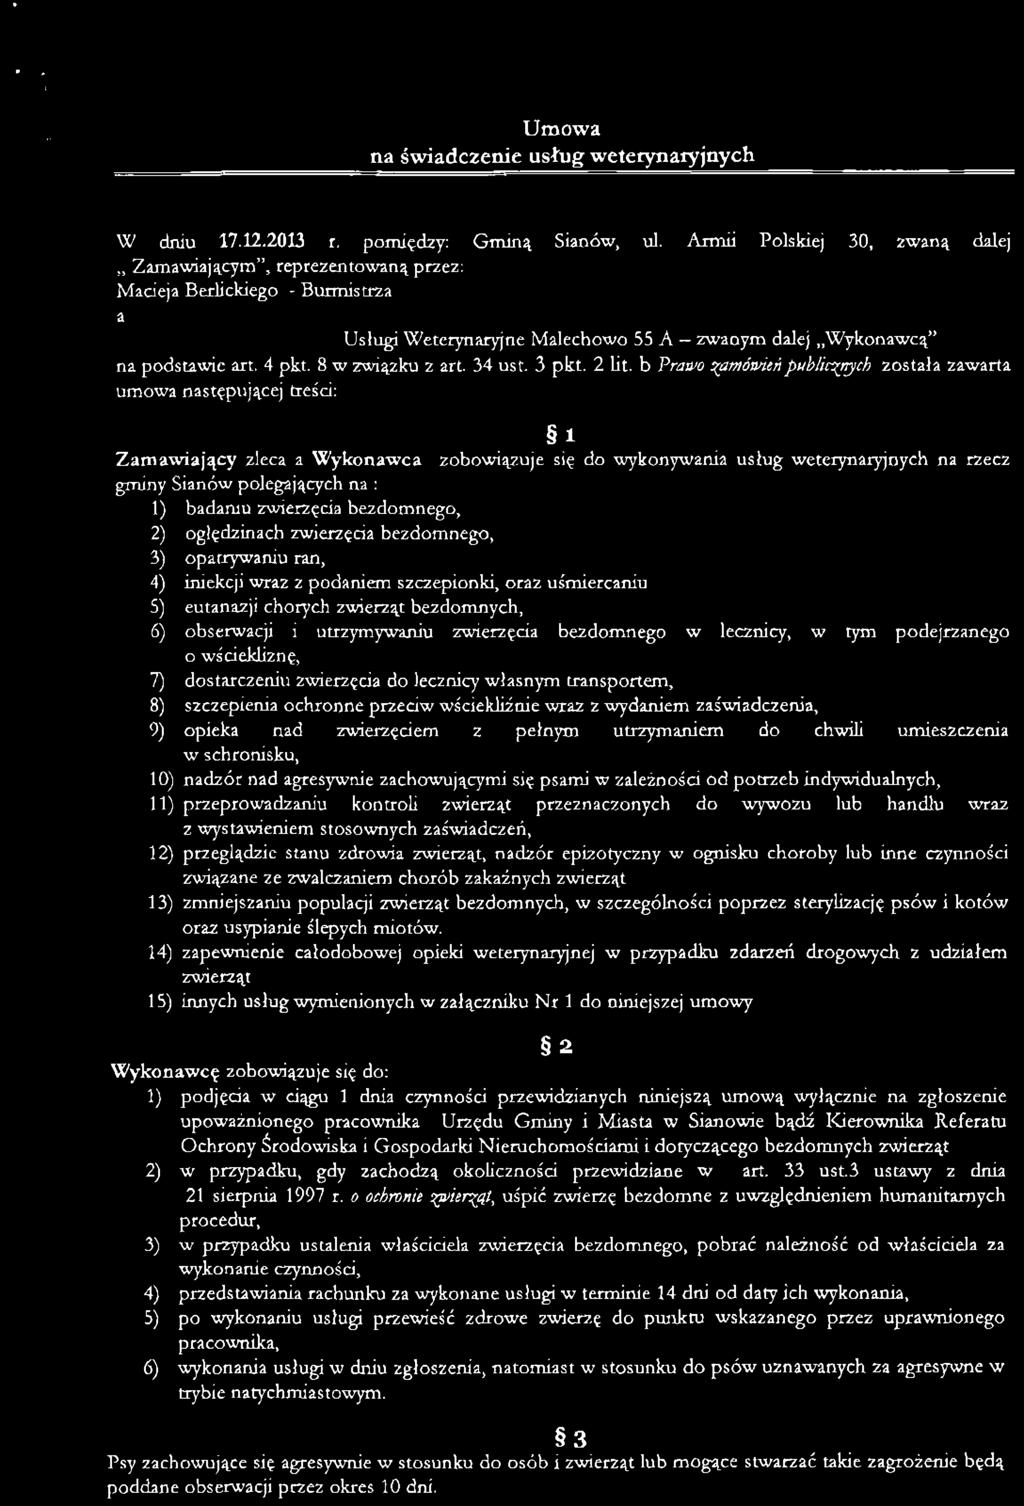 Umowa na świadczenie usług weterynaryjnych W dniu 17.12.2013 r. pomiędzy: Gminą Sianów, ul.